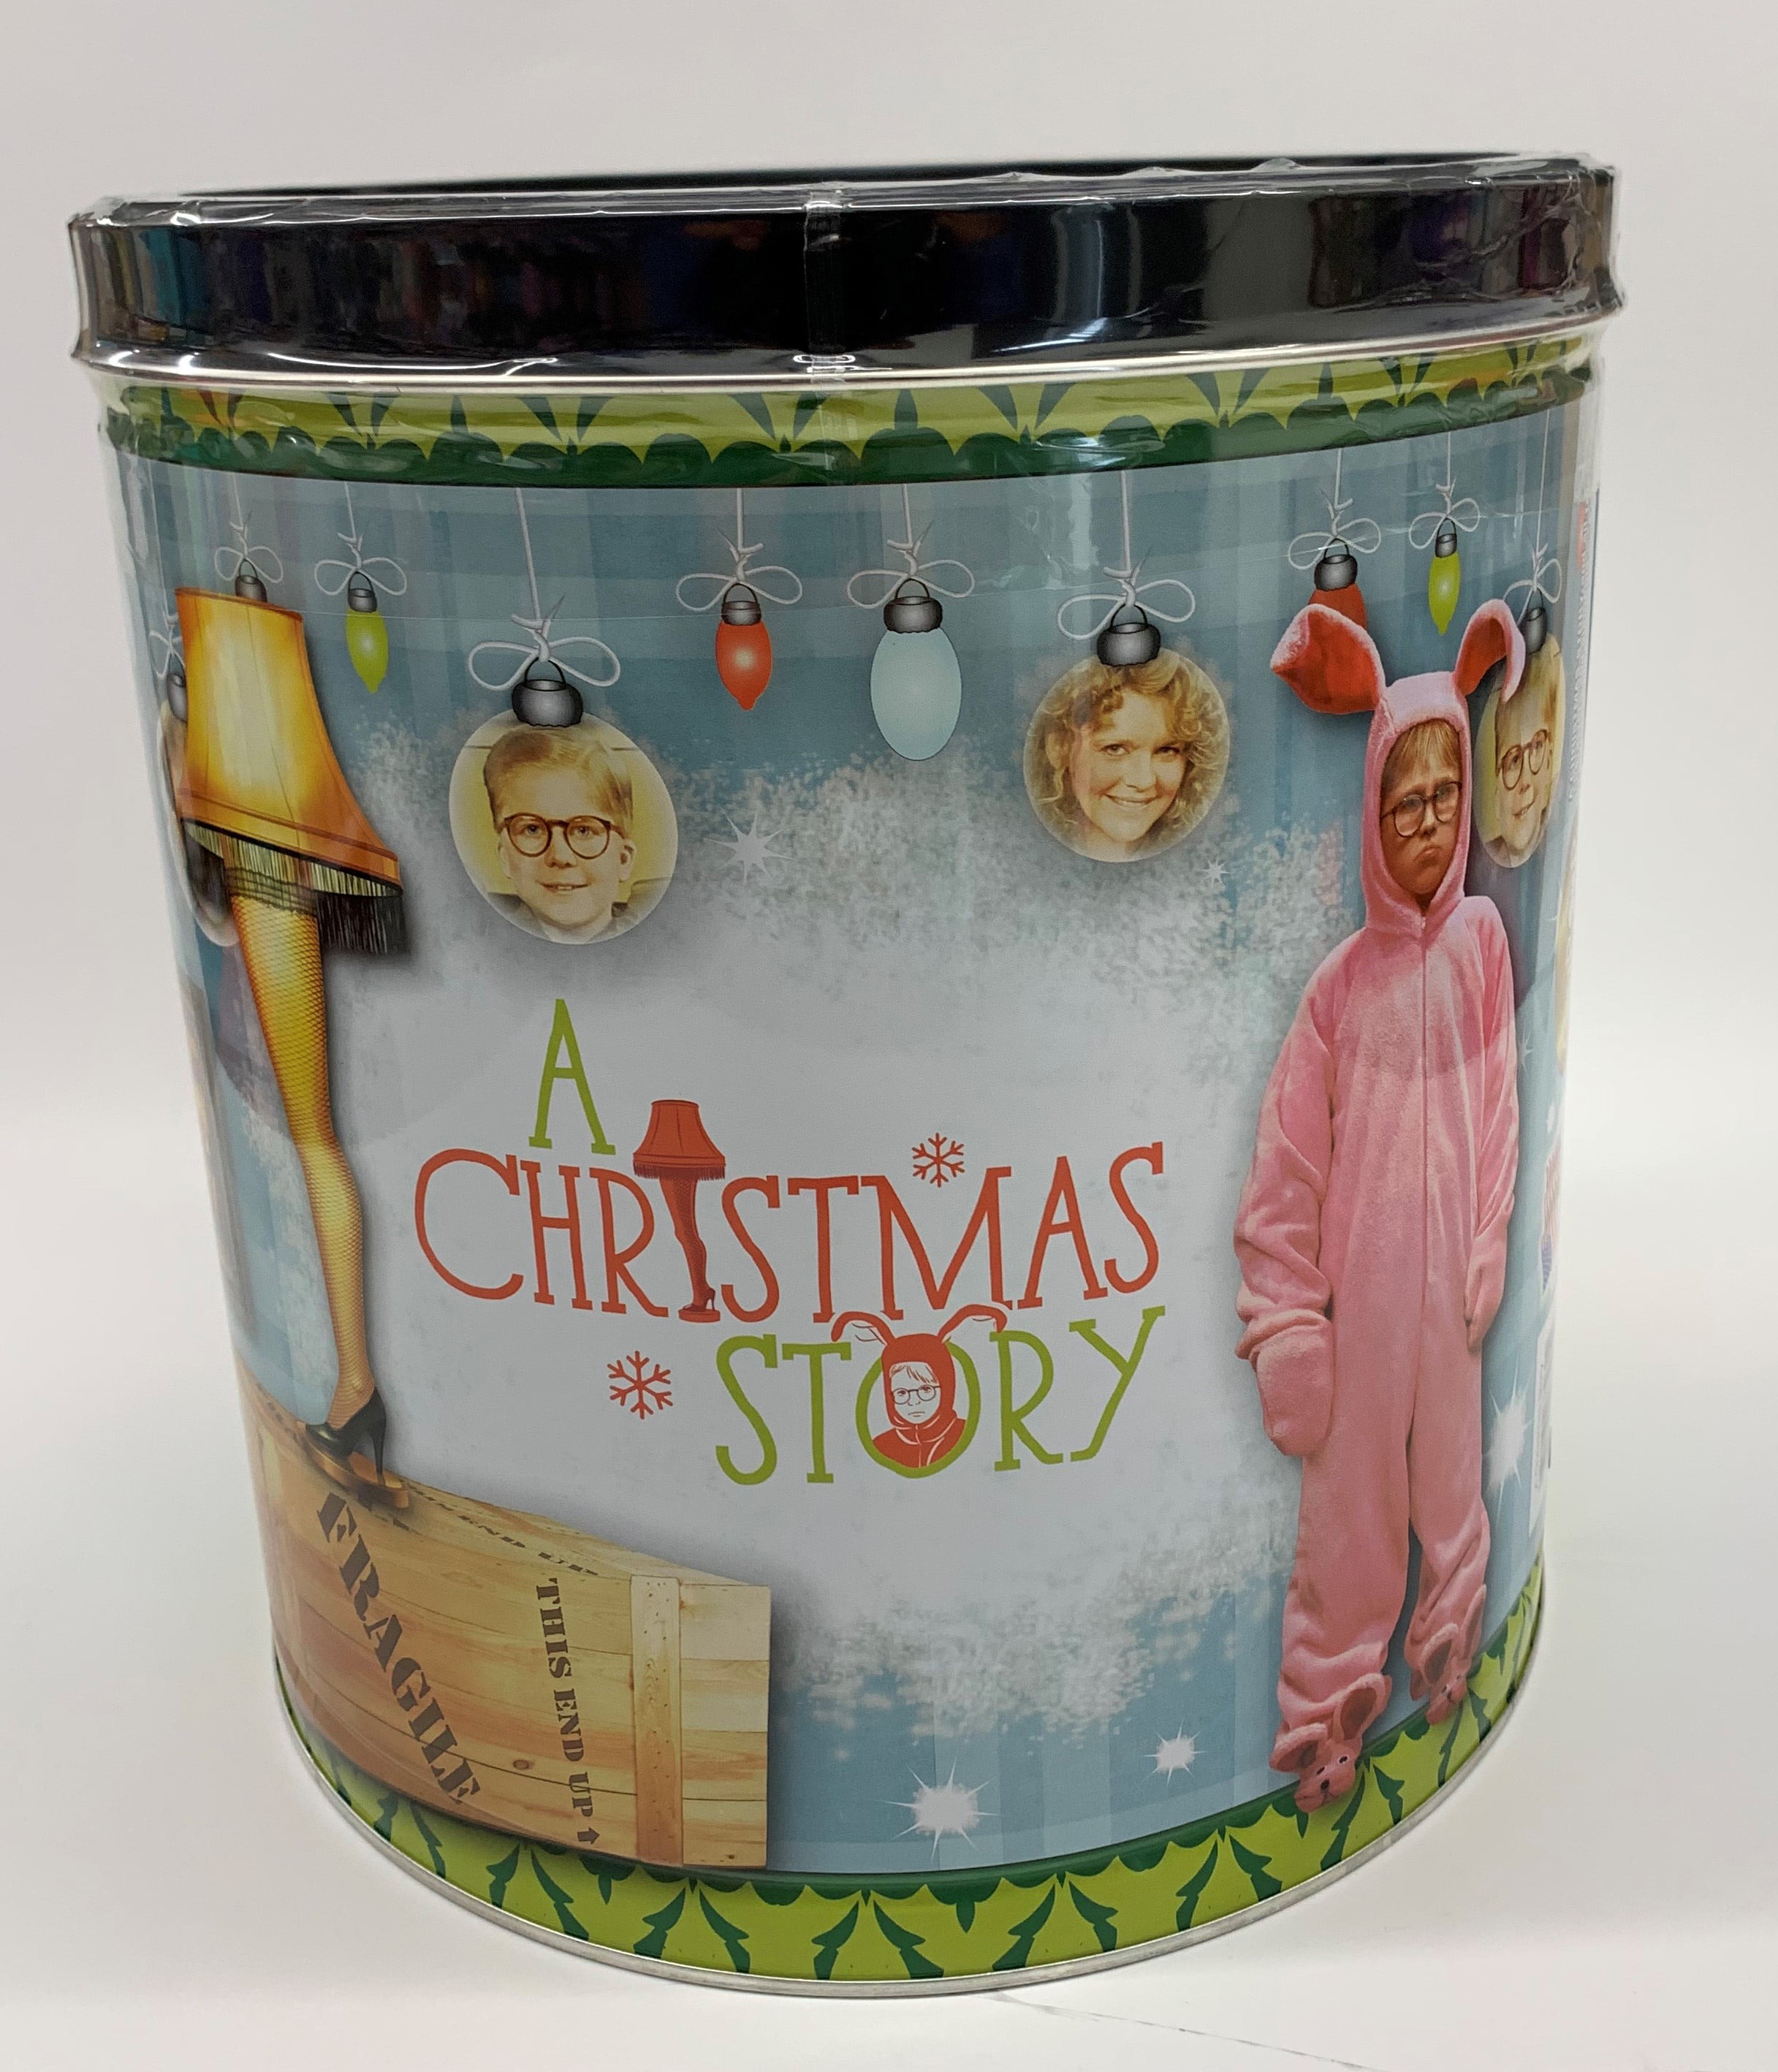 Signature Brands A Christmas Story Popcorn Tin, 24 Oz - Walmart.com ...